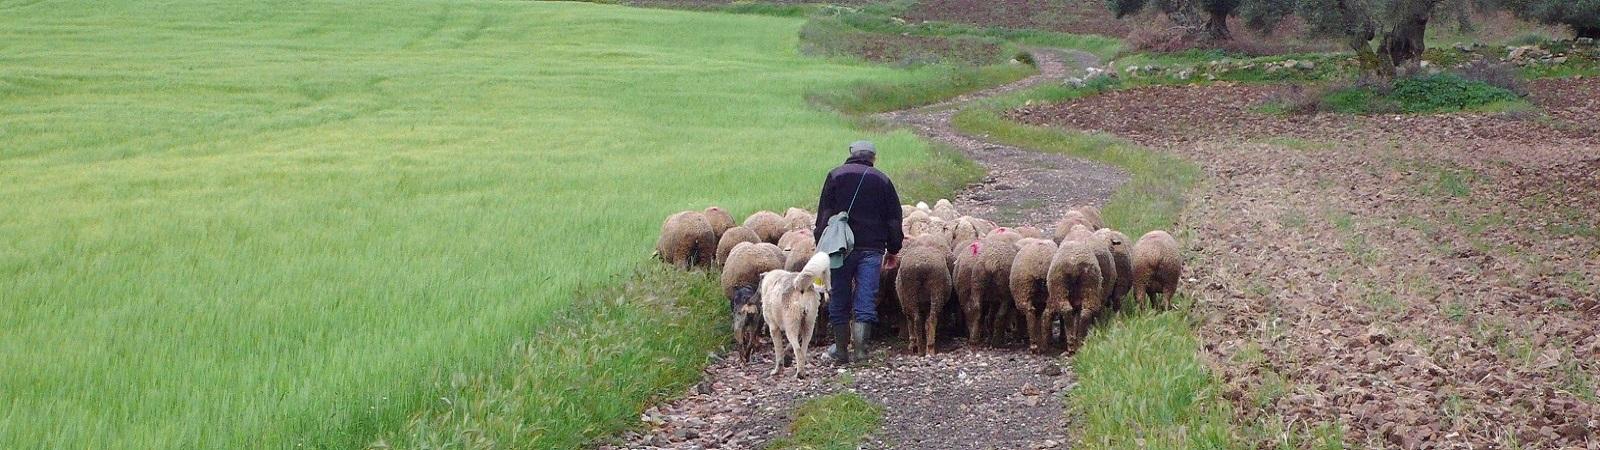 GranadaS 0914 Ten westen van Magacela, een herder brengt zijn schapen naar een weideplaats